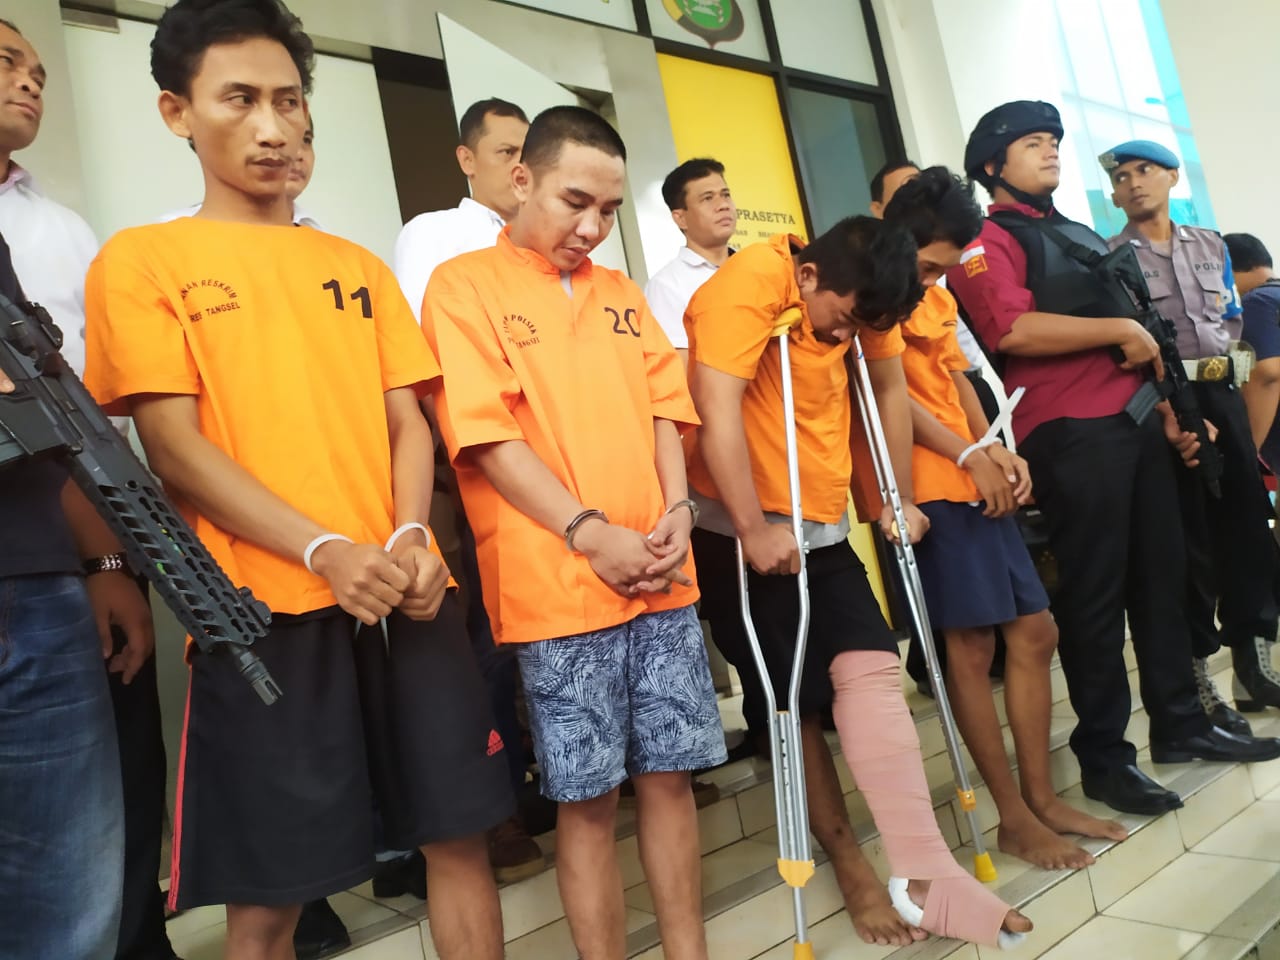 Polisi berhasil mengamankan para tersangka Efendi ,25, Alan Mustika, 23, Ronald, 22, serta Riyan, 24, mereka pelaku komplotan spesialis pembobol mesin anjungan tunai mandiri (ATM) yang beraksi di wilayah Tangerang Selatan.